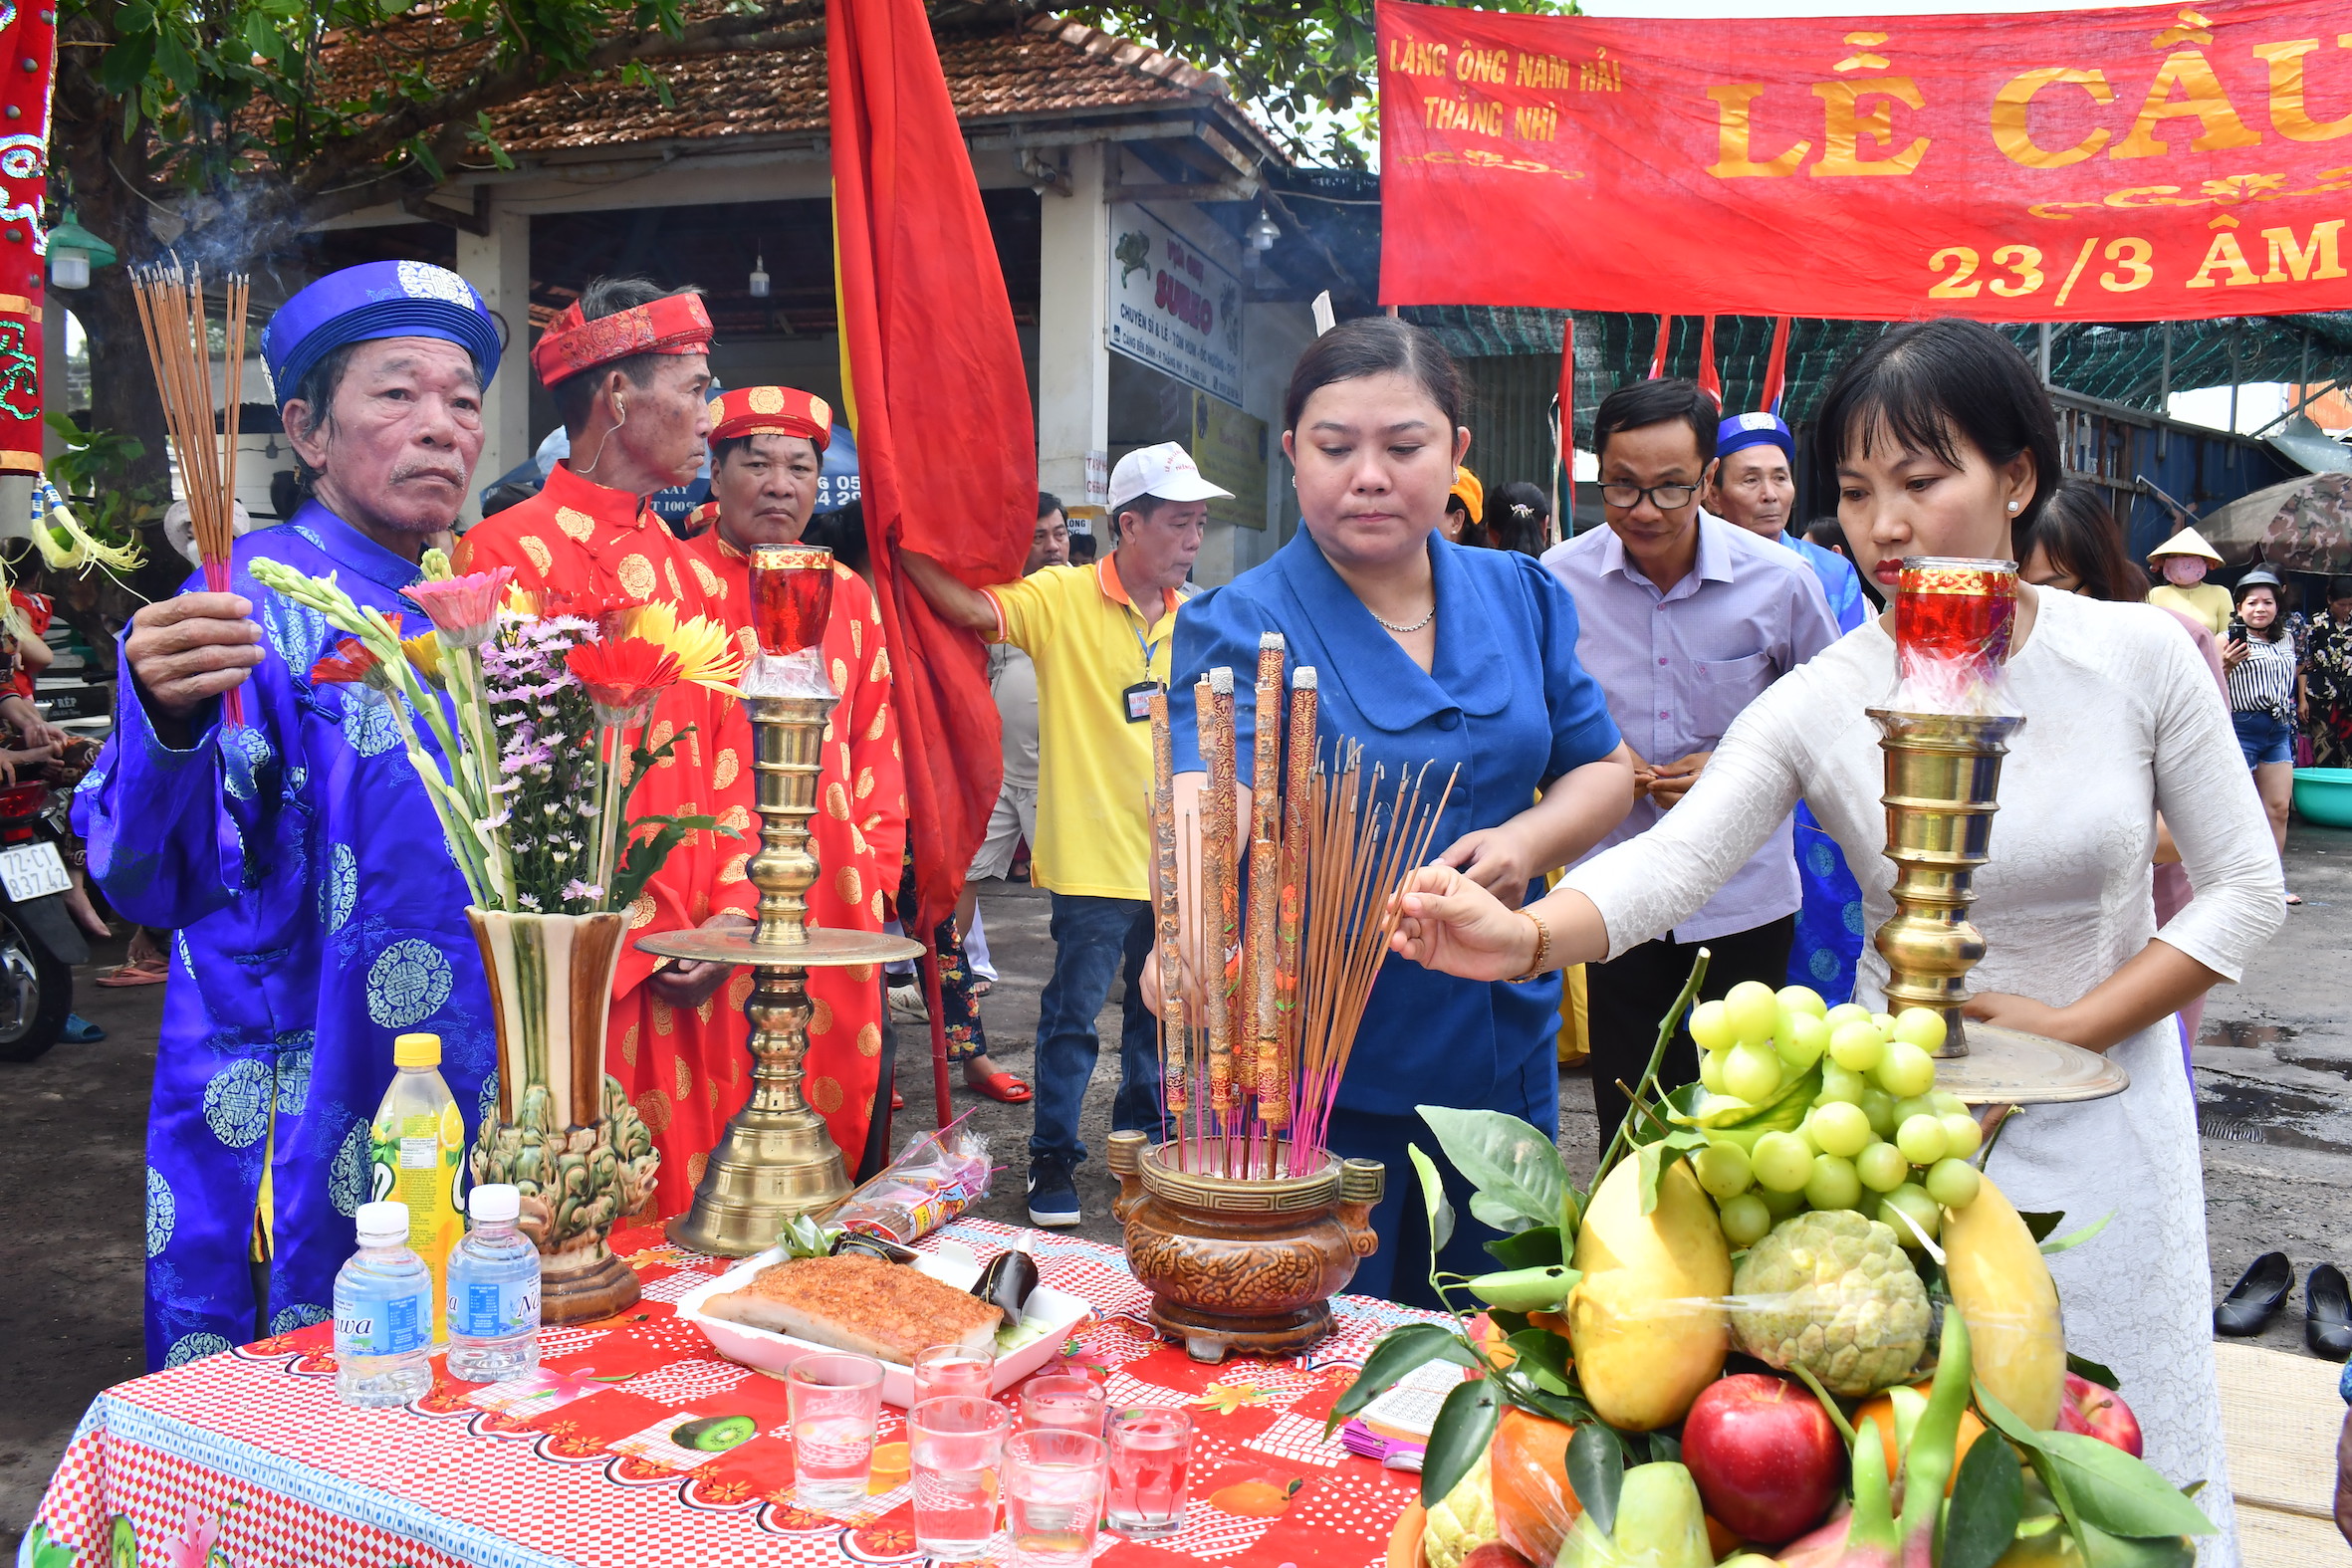 Lãnh đạo phường Thắng Nhì, TP. Vũng Tàu thực hiện nghi lễ chiêm bái trong lễ cúng Ông Nam Hải.